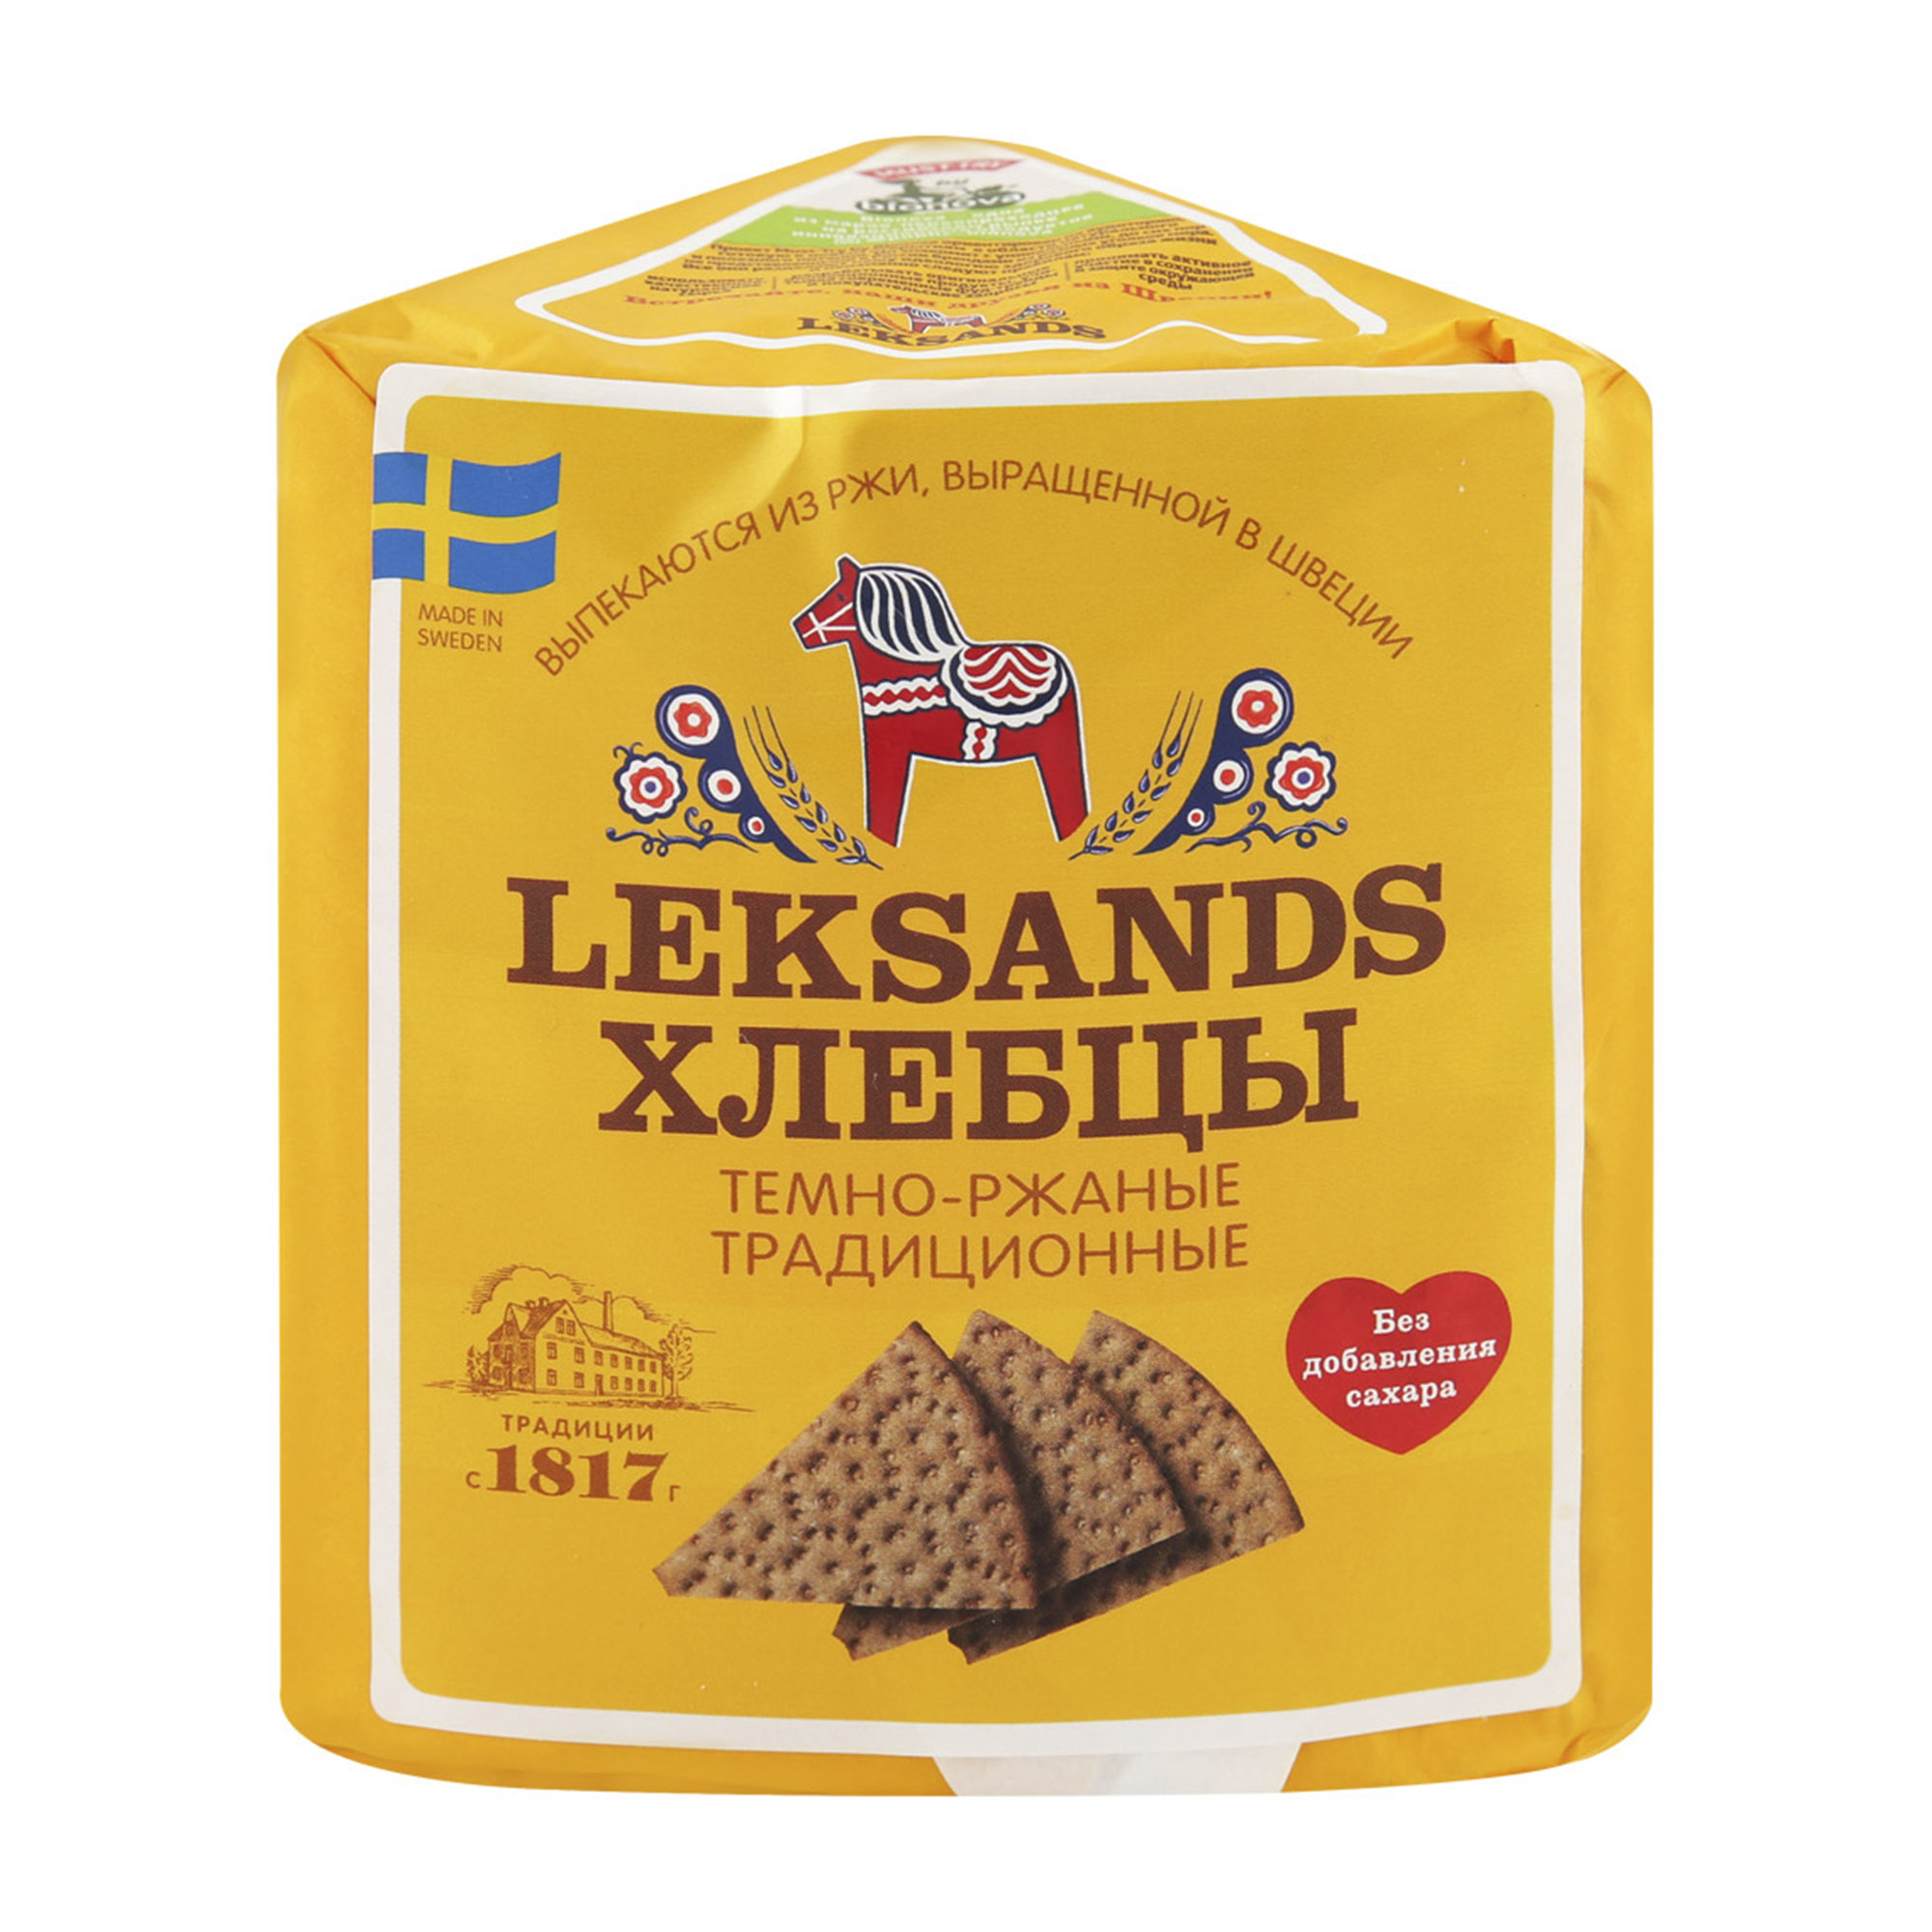 Хлебцы Leksands Темно-ржаные традиционные 200 г